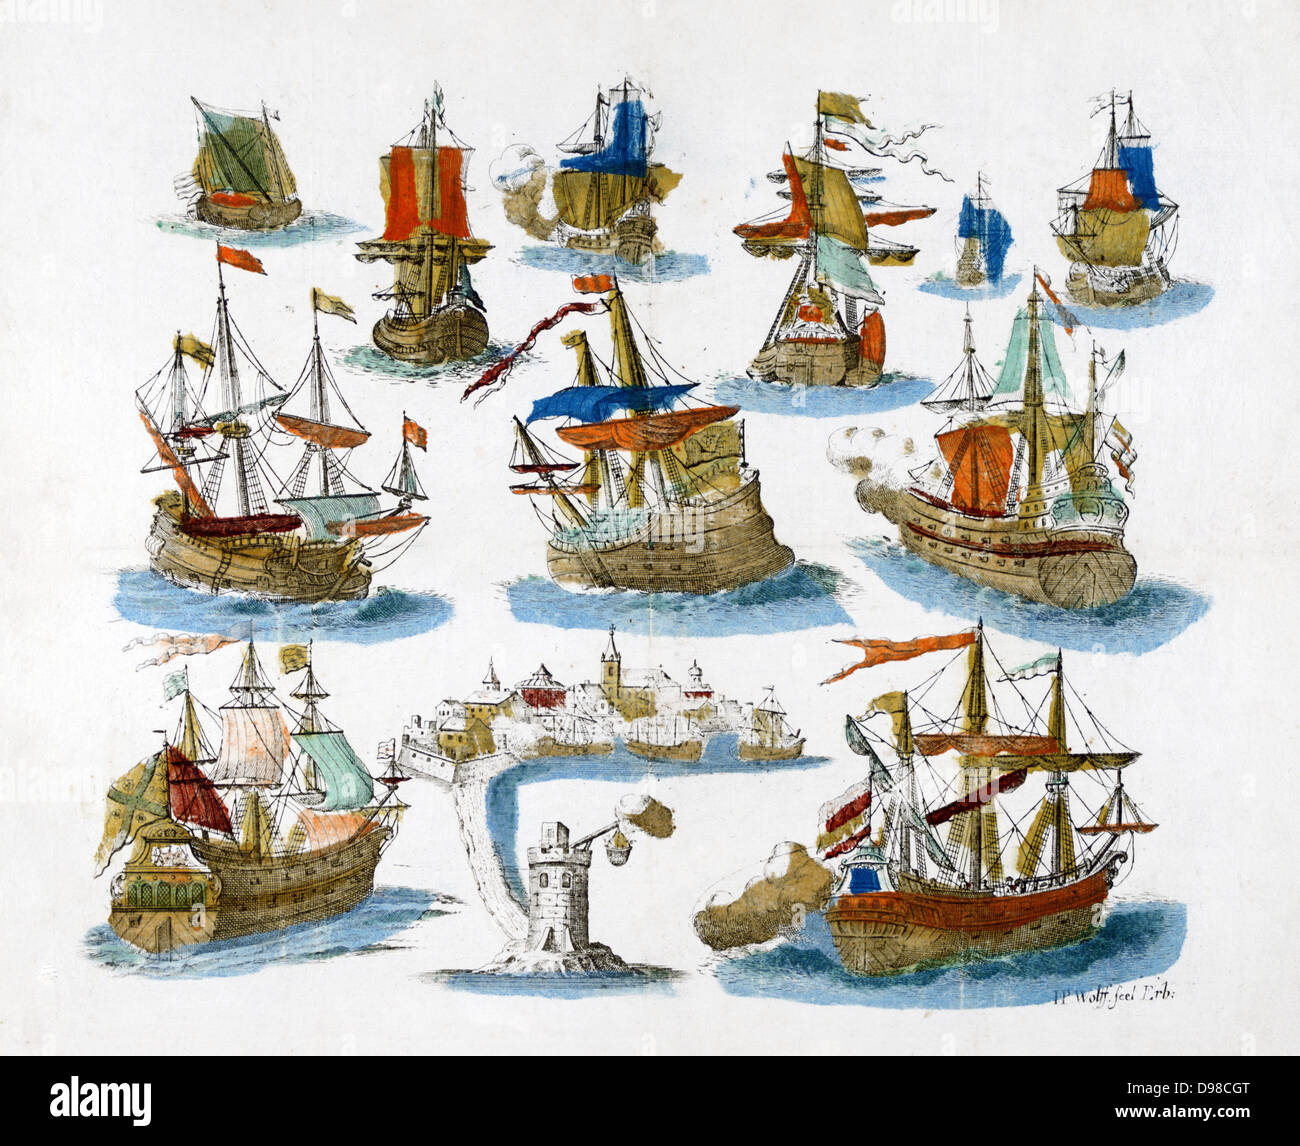 Populares del siglo xviii imprimir de diversas embarcaciones. Foto de stock